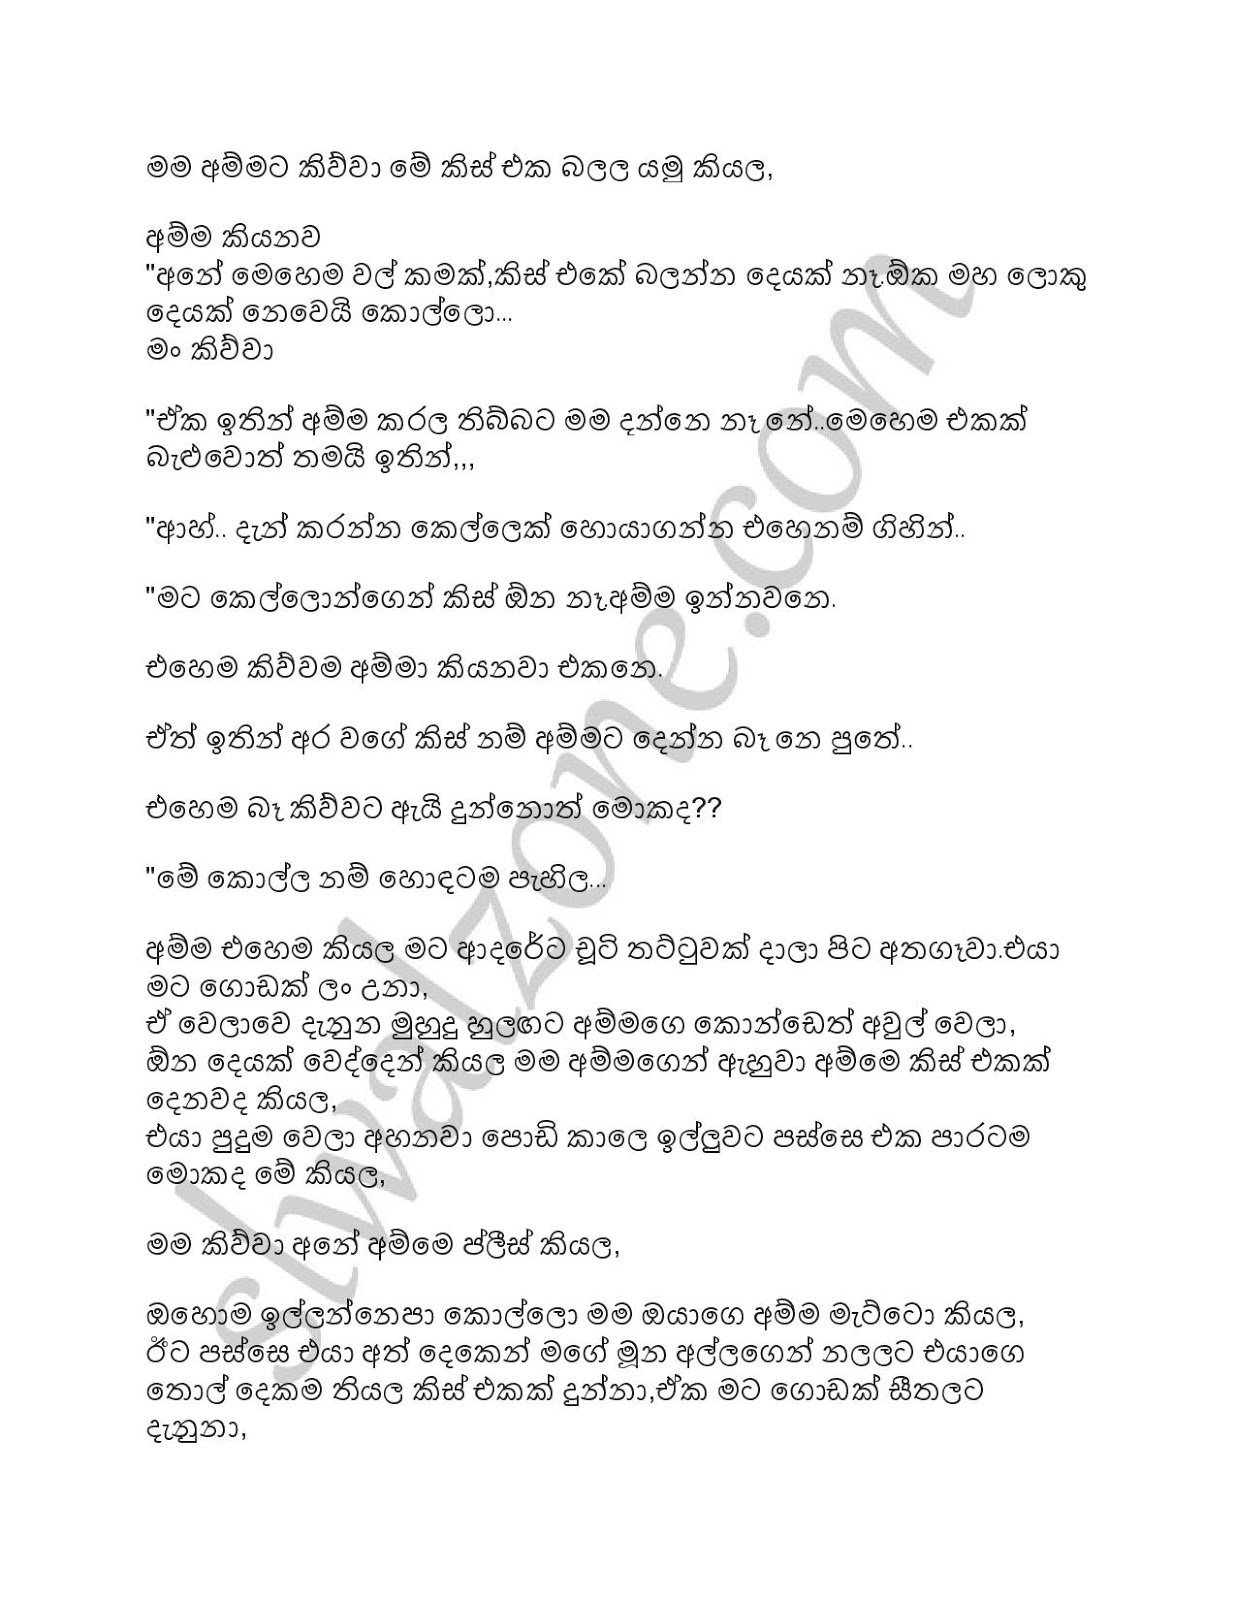 අම්මයිමමයිගාලුකොටුවෙදි1 Sinhala Wal Katha